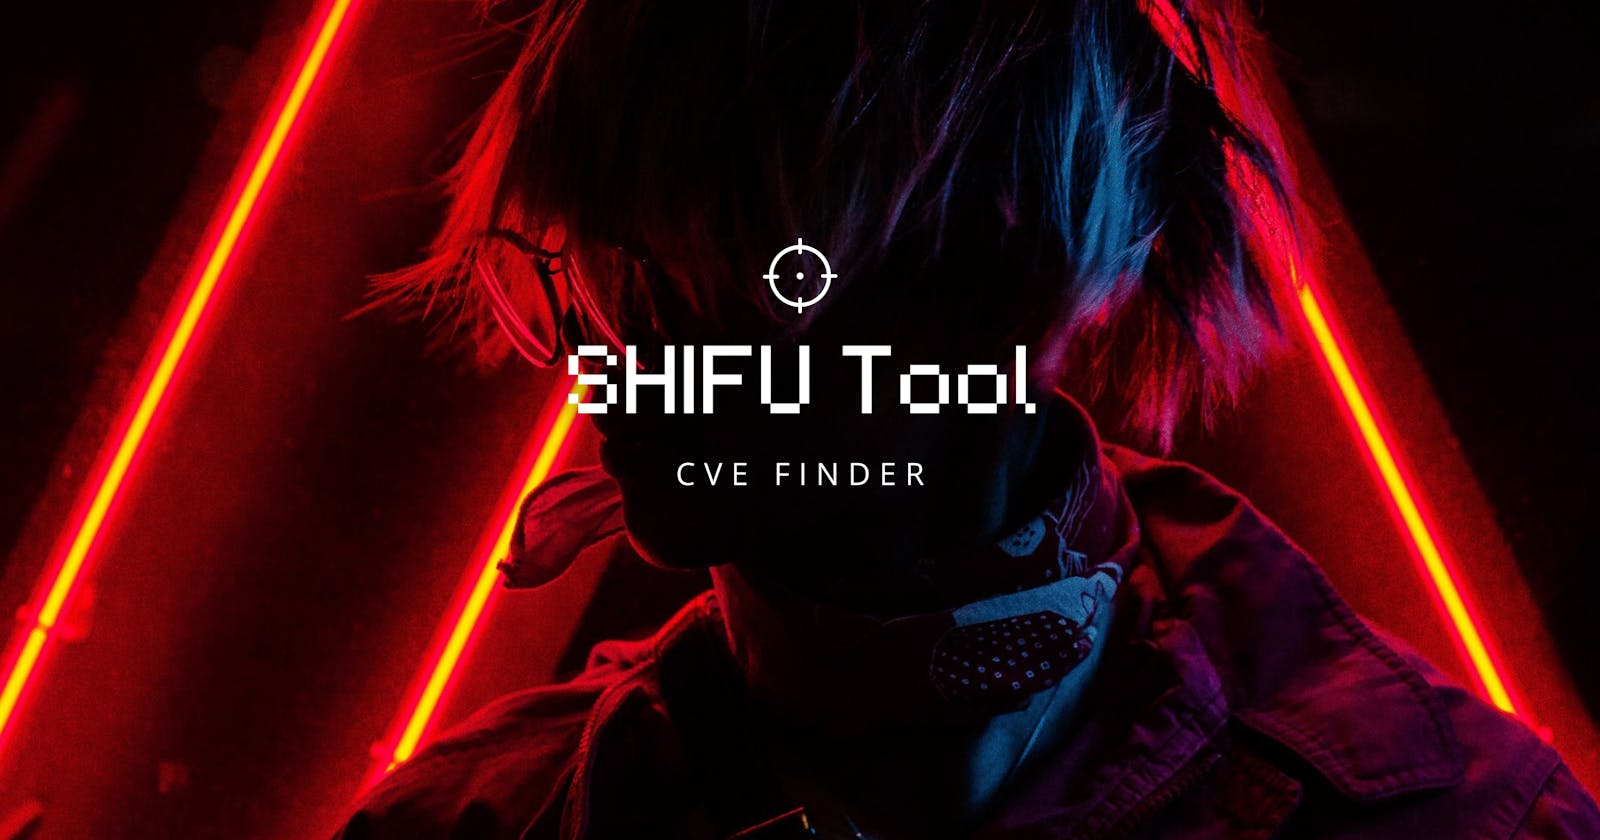 SHIFU Tool